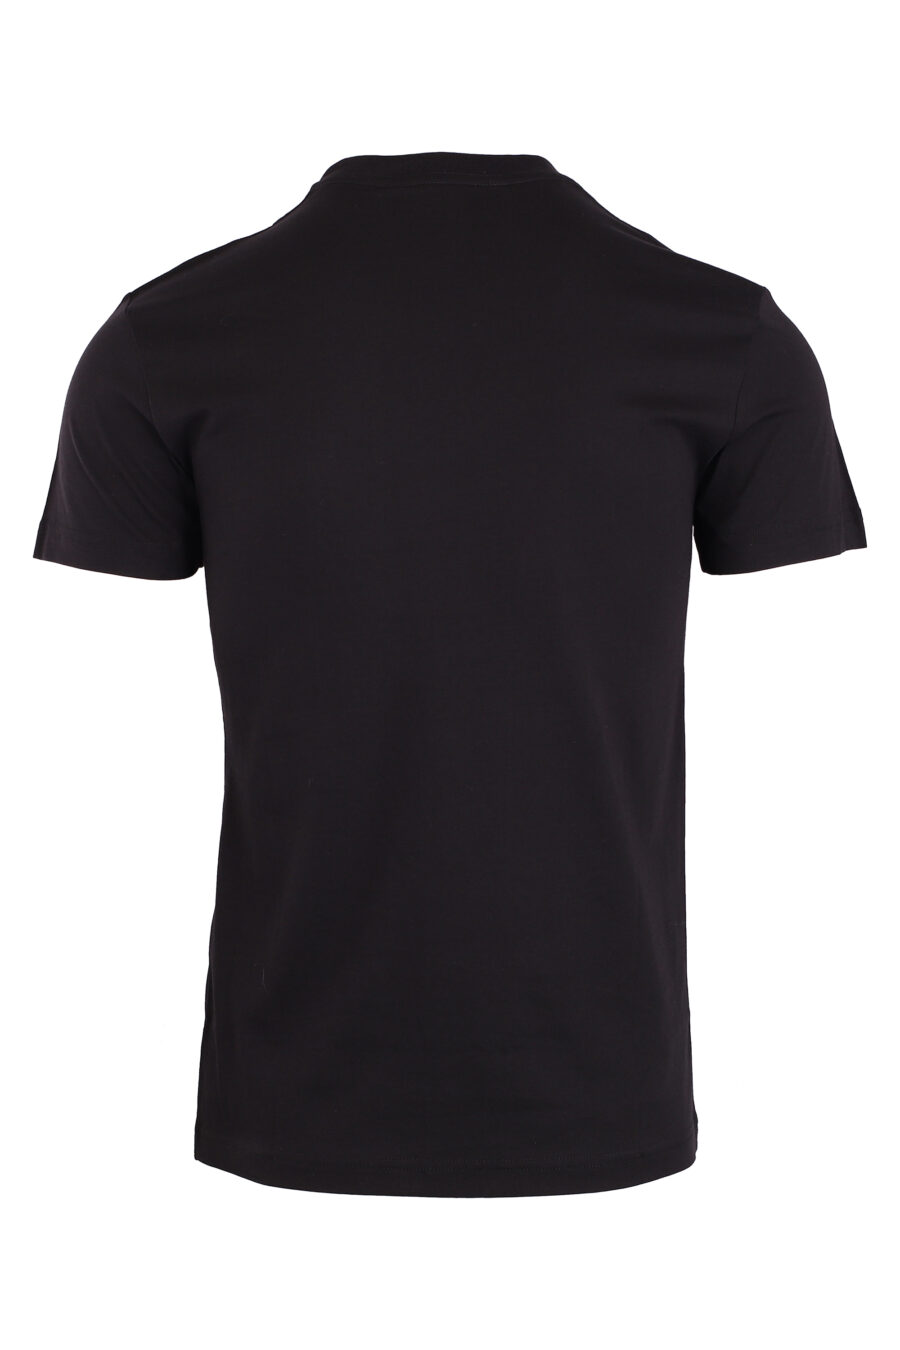 Camiseta negra con logo circular gris - IMG 8945